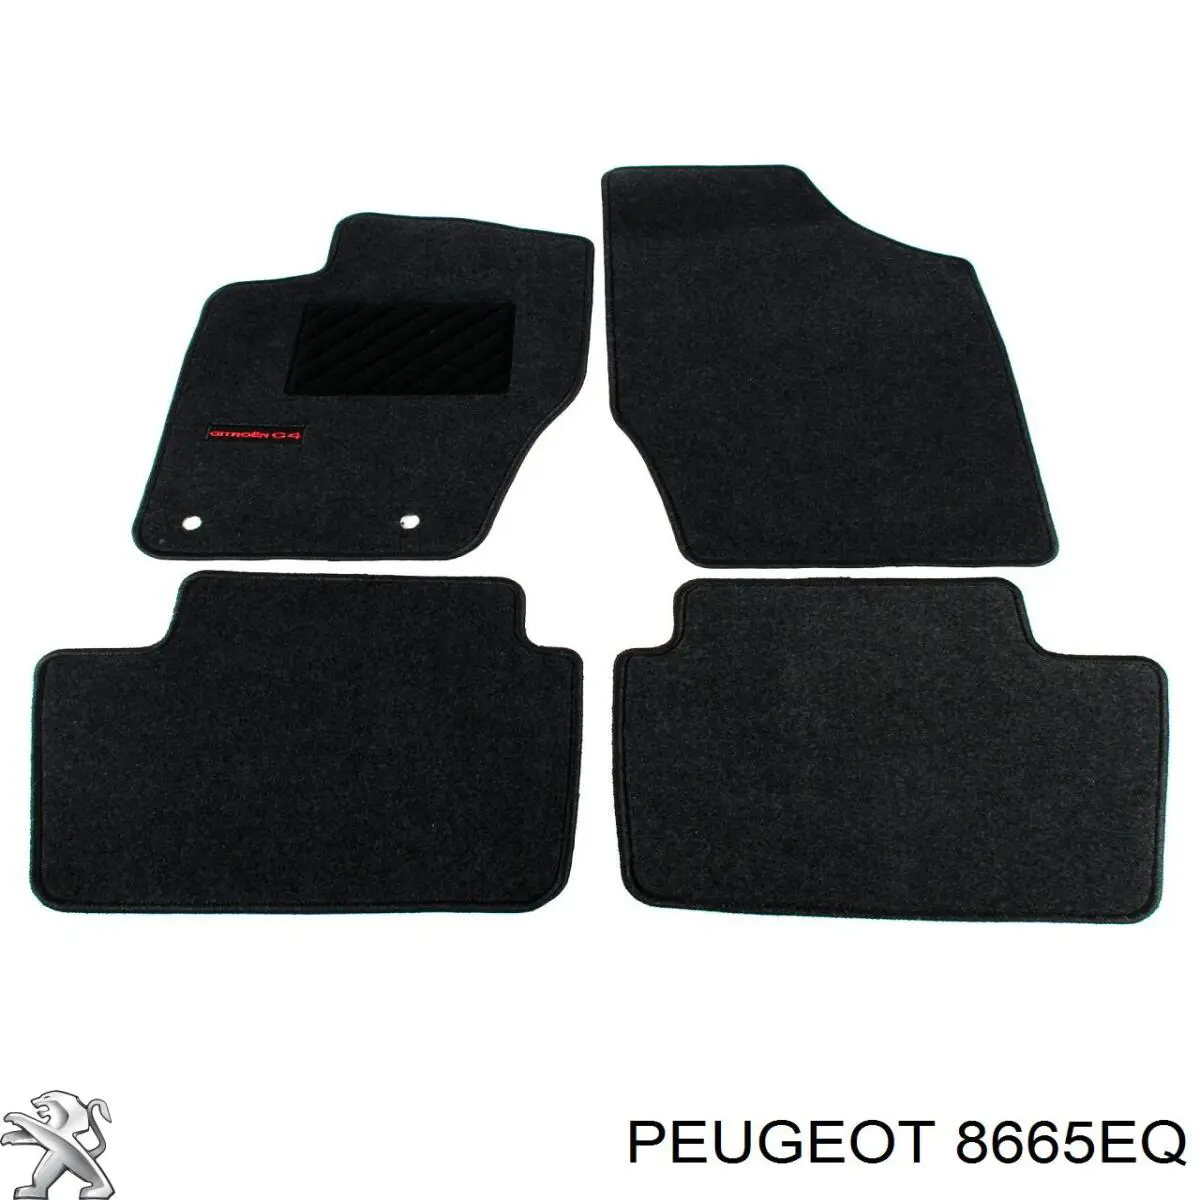 8665EQ Peugeot/Citroen emblema de tapa de maletero